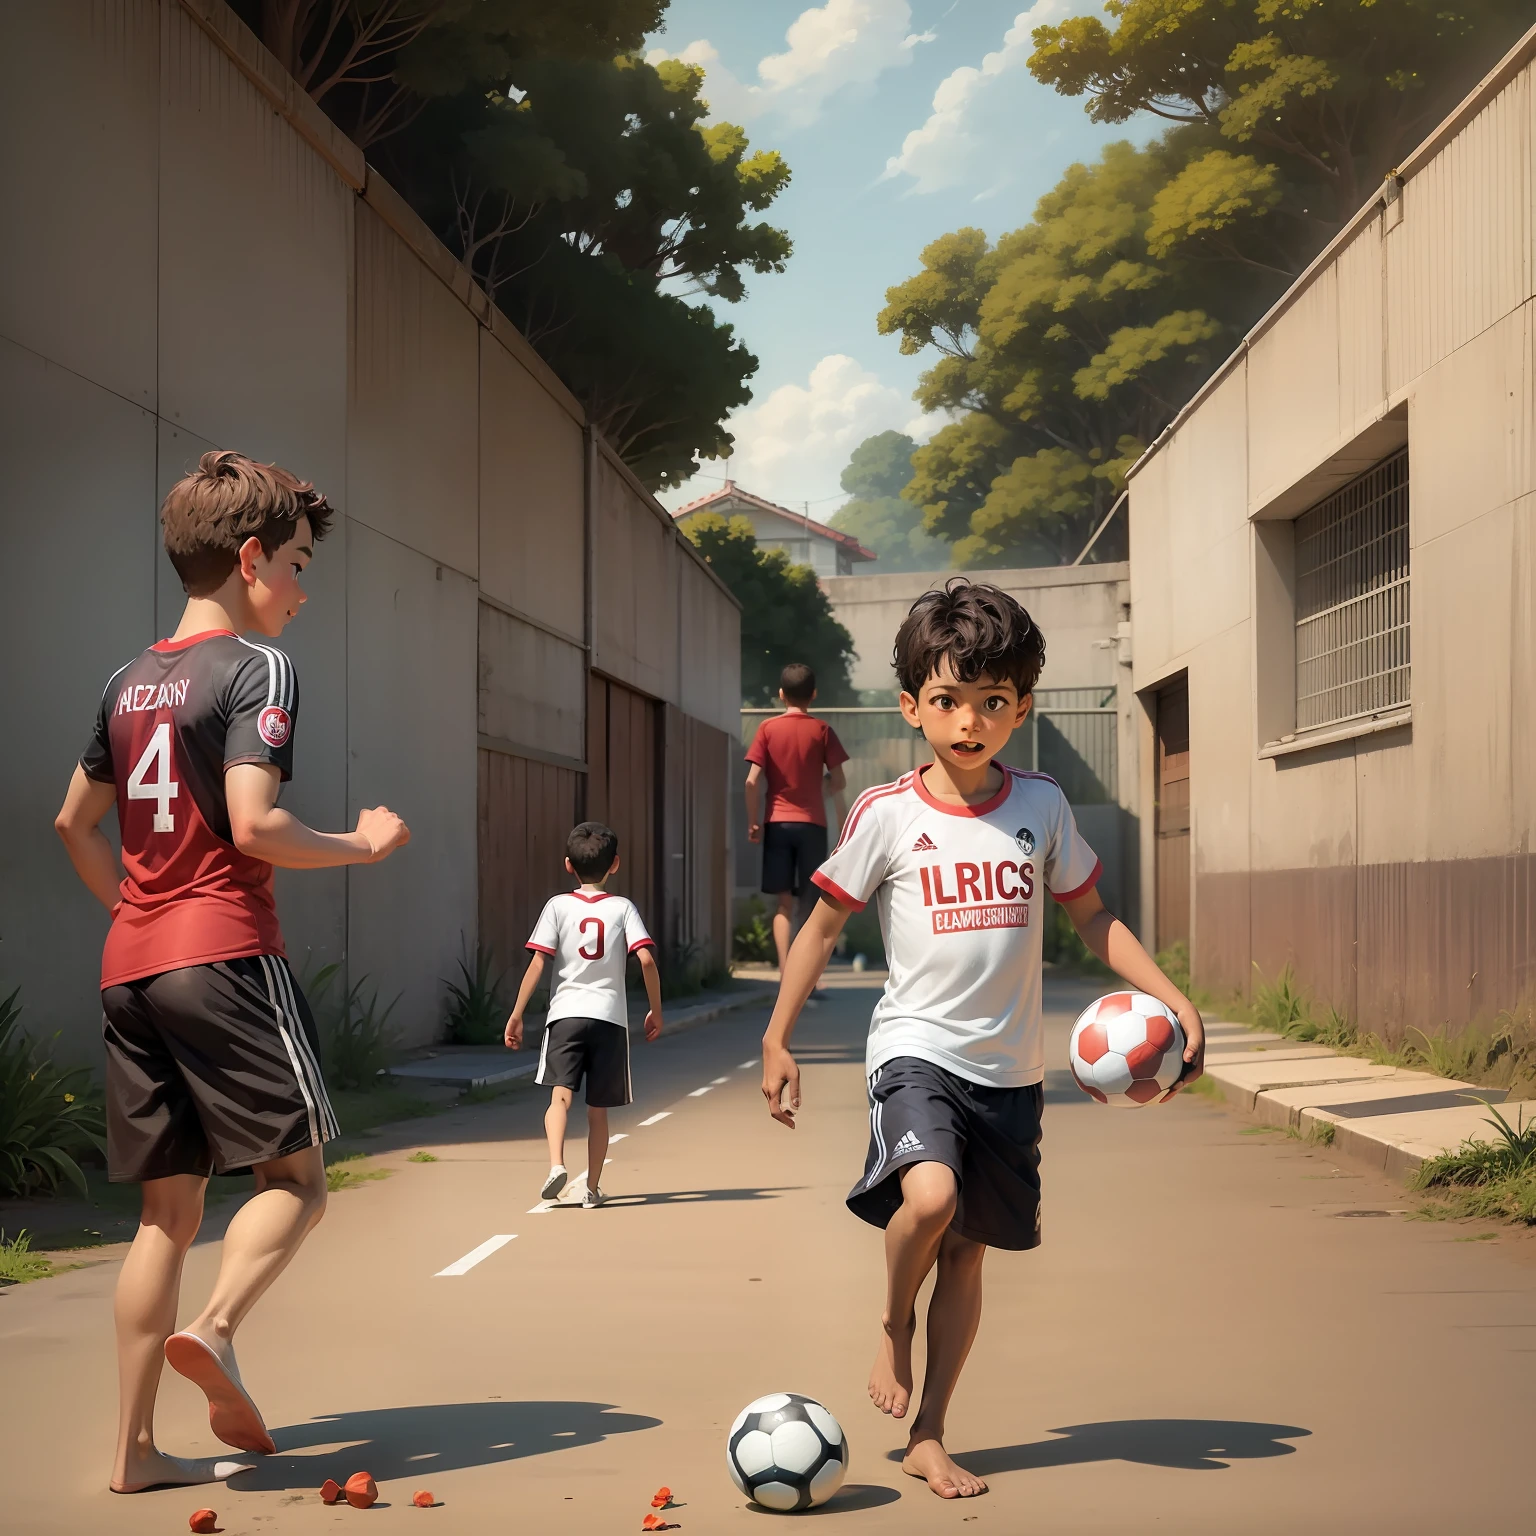 Crianças brasileiras jogando futebol na rua com origem comunitária no Rio de Janeiro